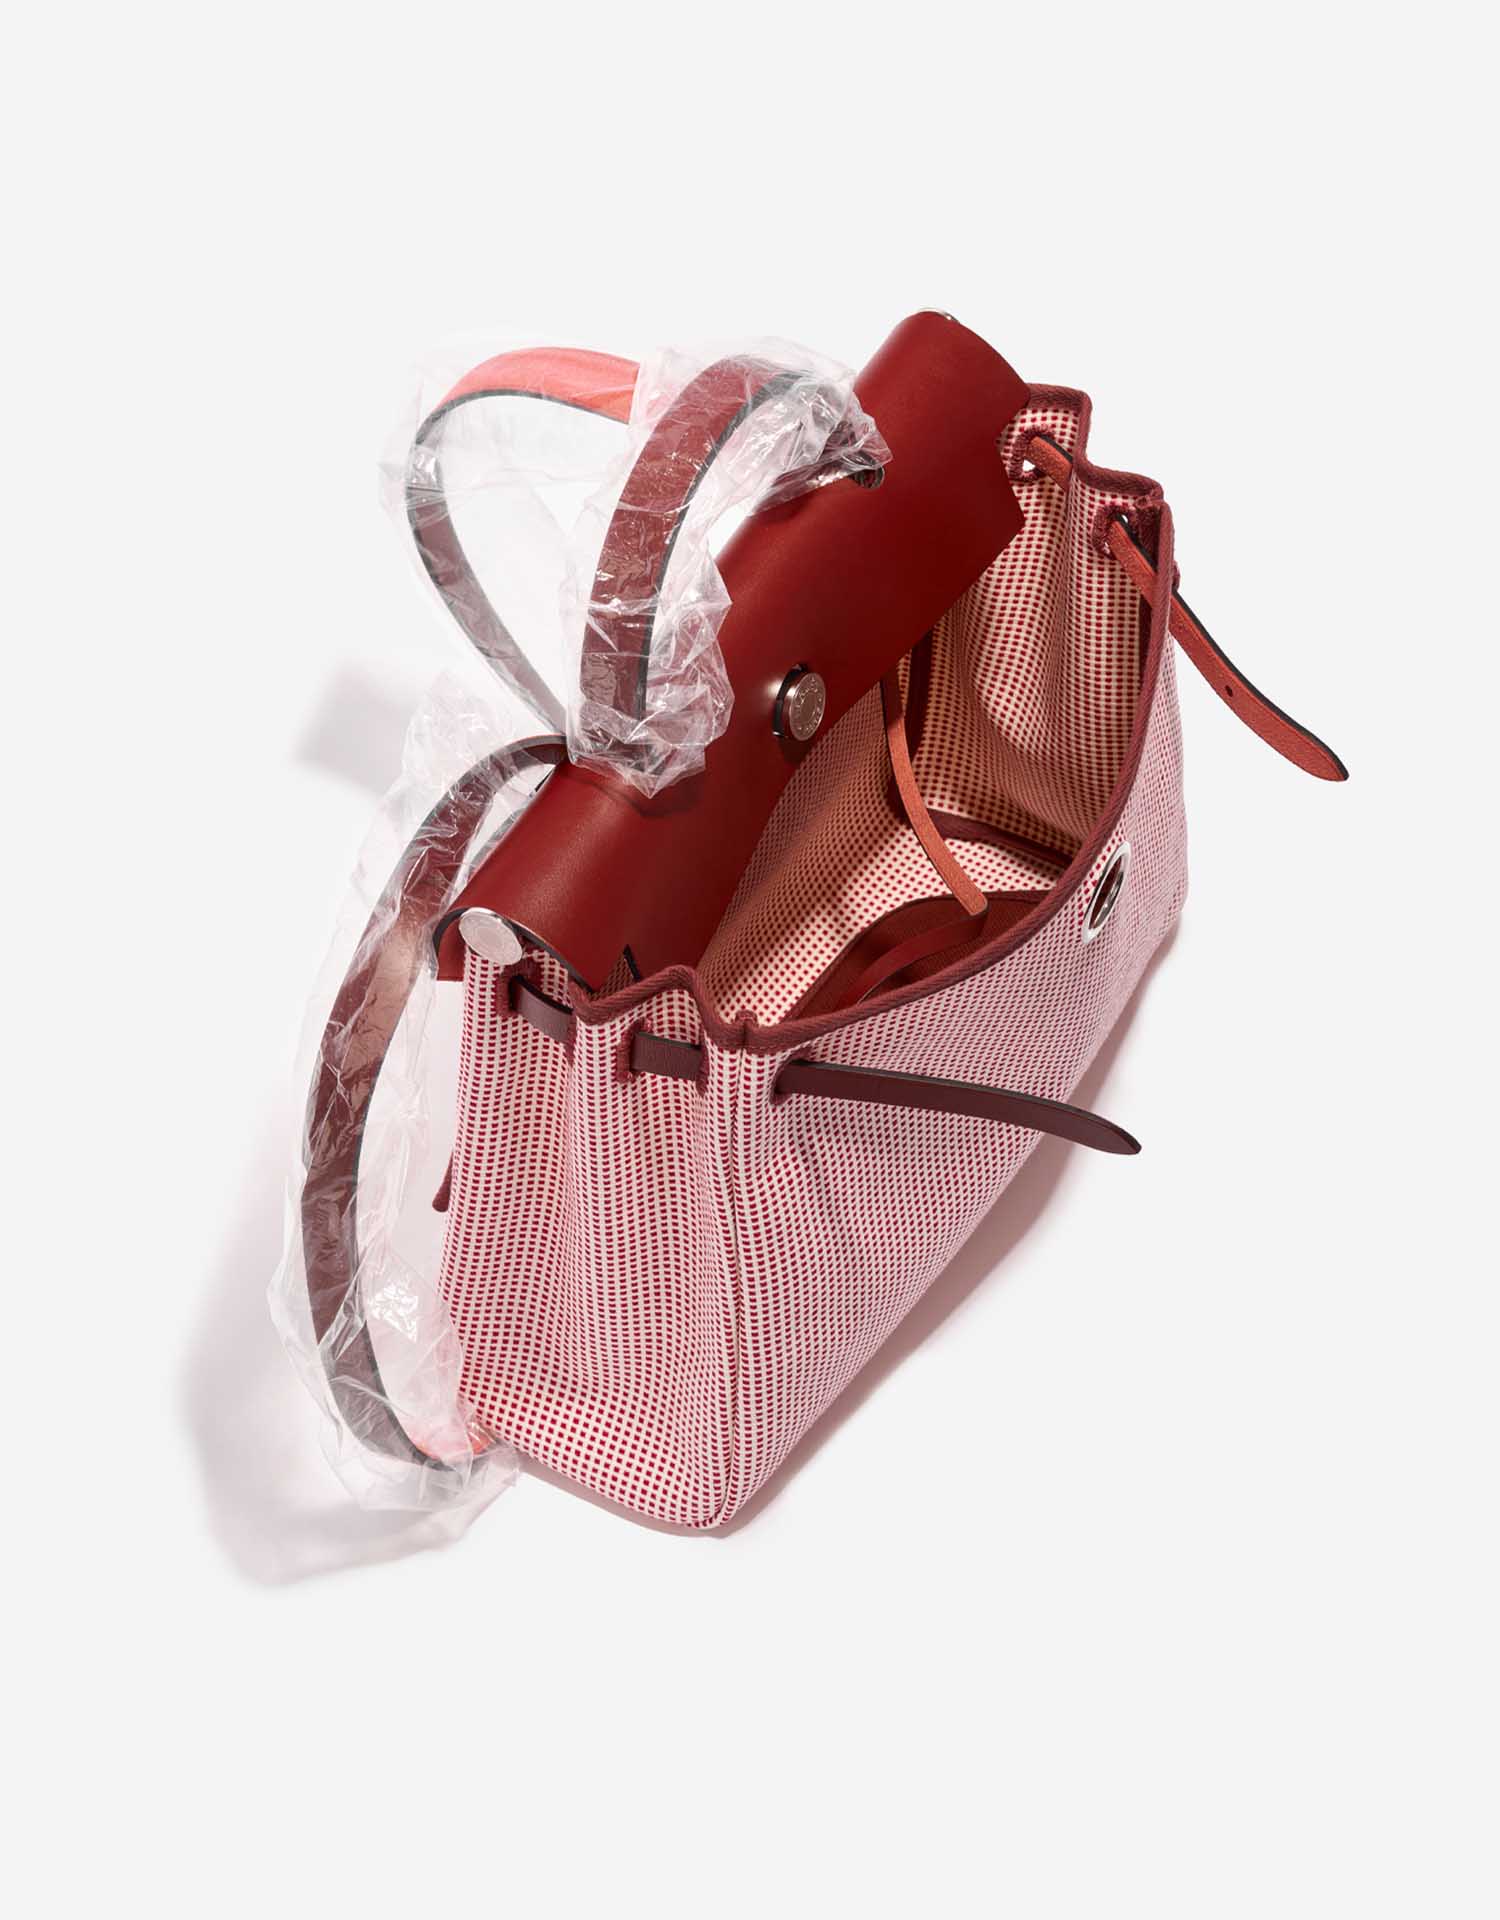 Hermès Herbag 31 EcruBlanc-Framboise-Rouge Innenseite | Verkaufen Sie Ihre Designer-Tasche auf Saclab.com